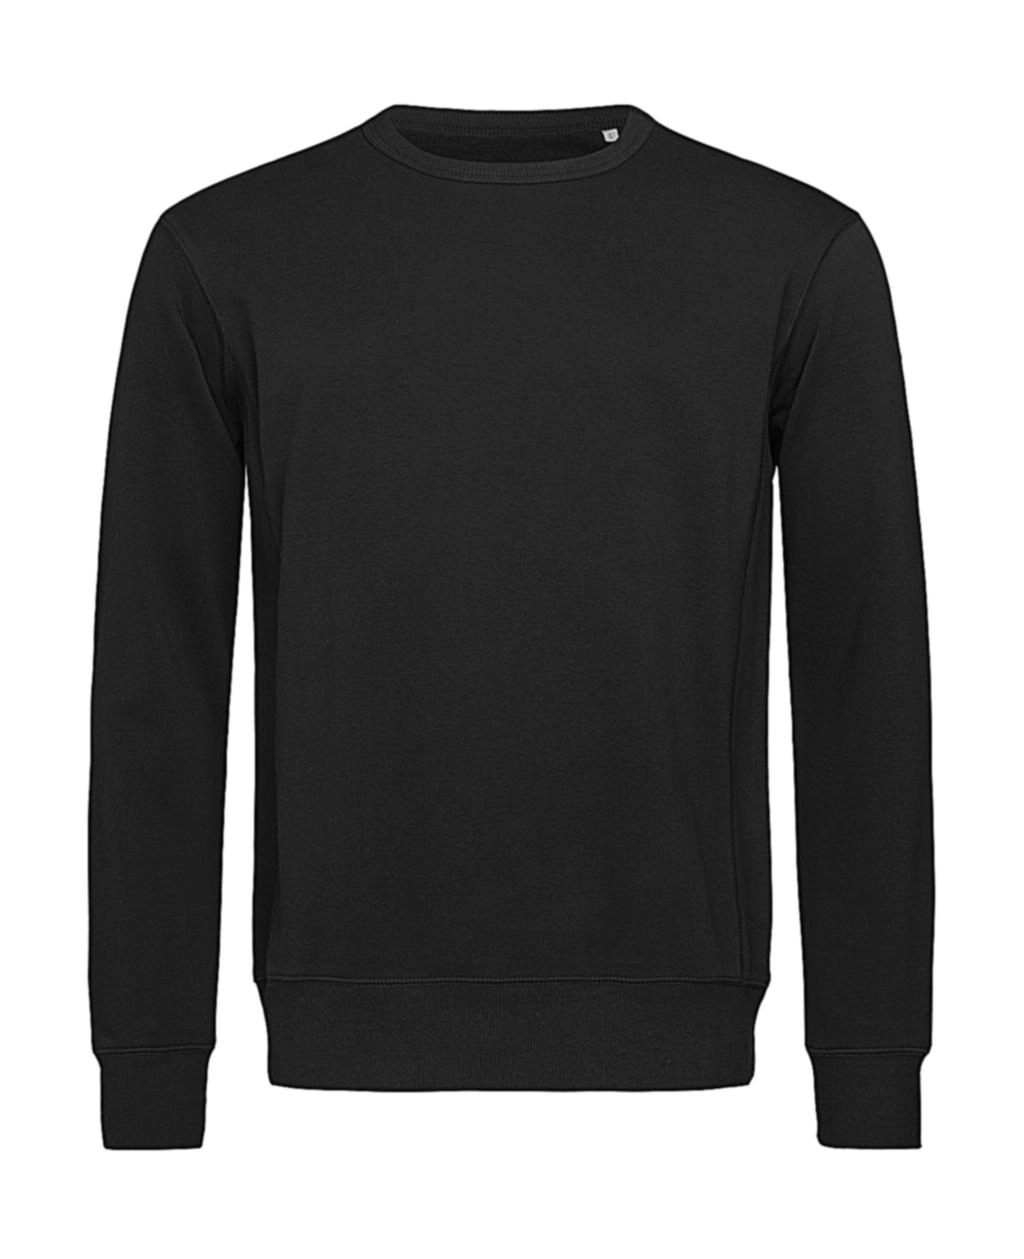 Sweatshirt Select zum Besticken und Bedrucken in der Farbe Black Opal mit Ihren Logo, Schriftzug oder Motiv.